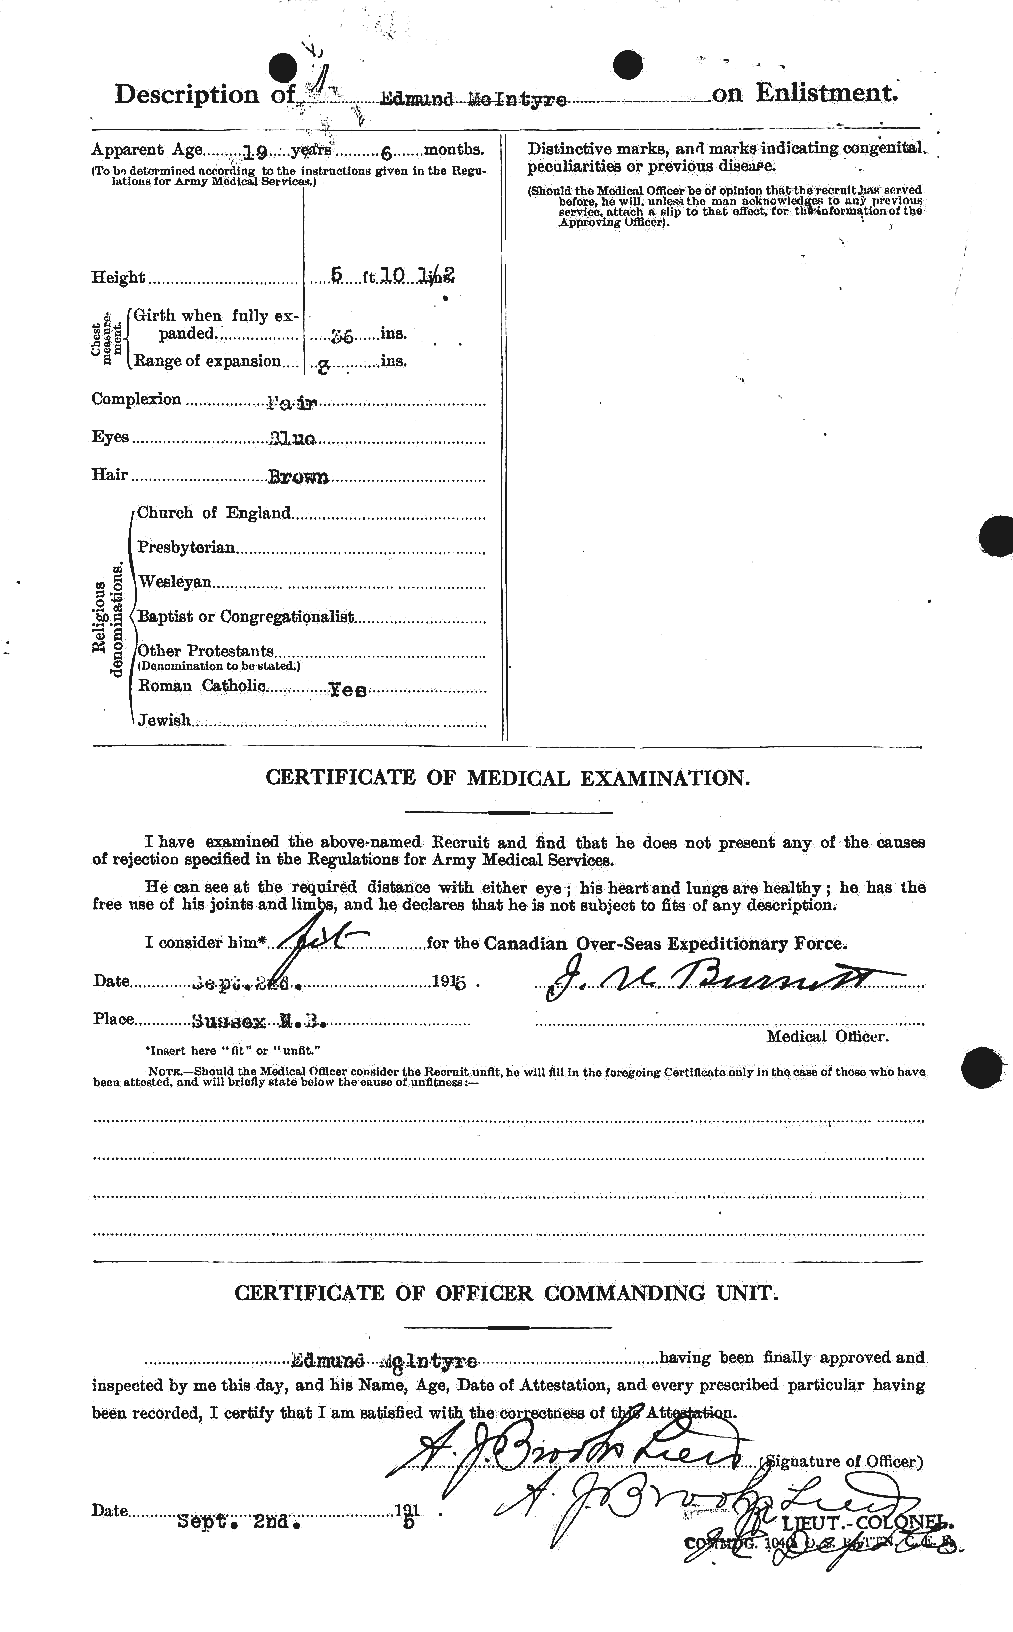 Dossiers du Personnel de la Première Guerre mondiale - CEC 527350b